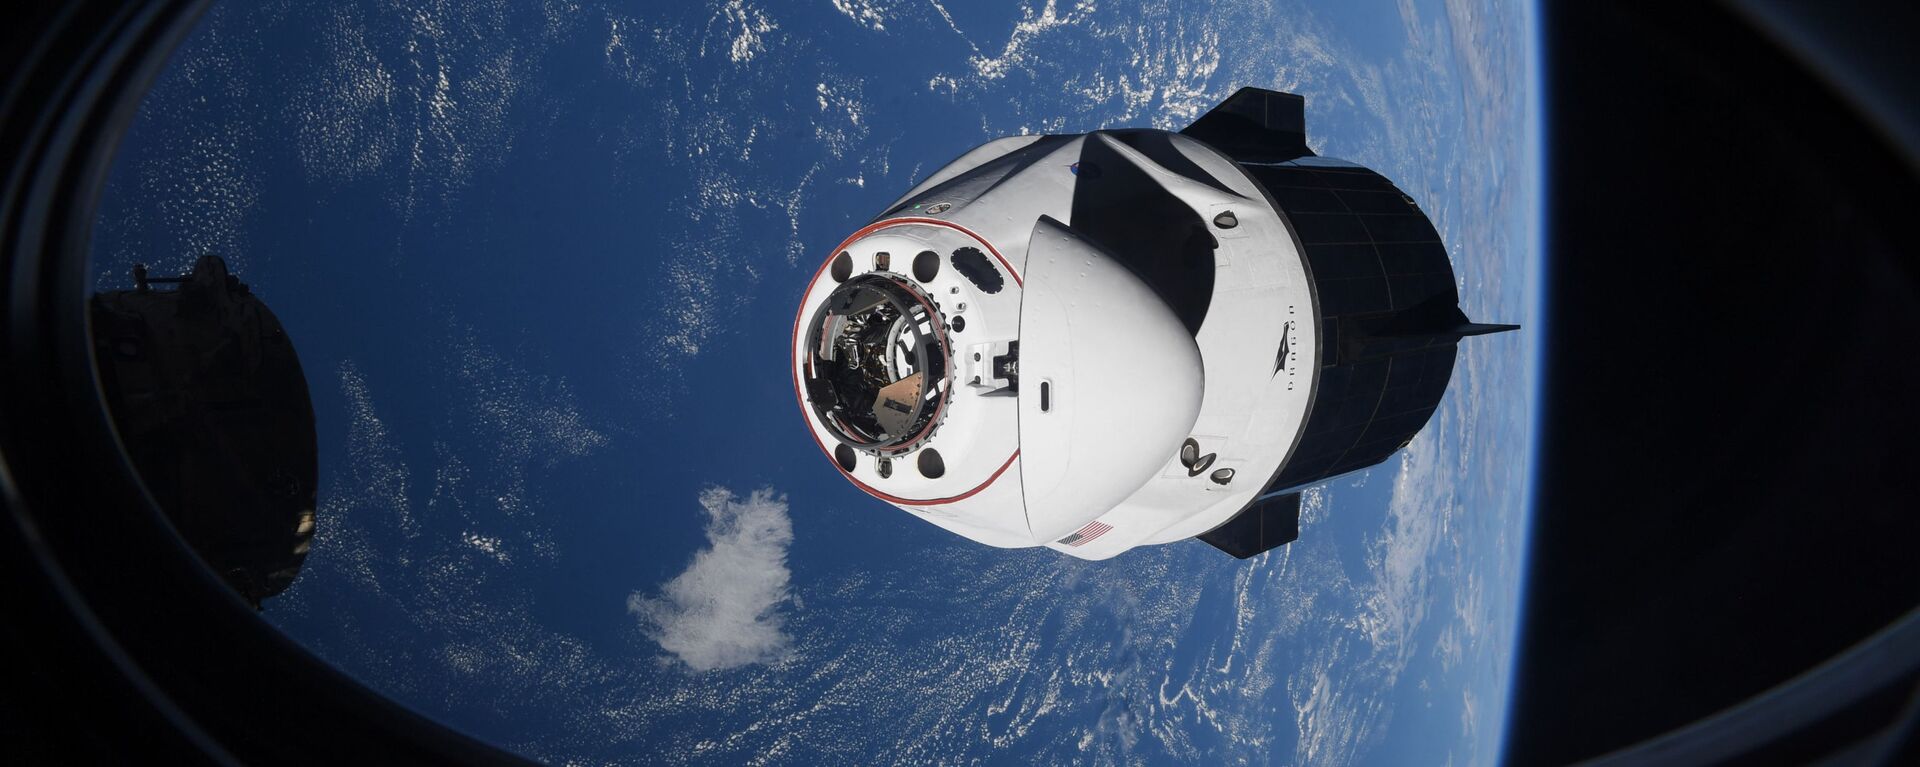 Капсула SpaceX Crew Dragon приближается к Международной космической станции - Sputnik Грузия, 1920, 15.08.2021